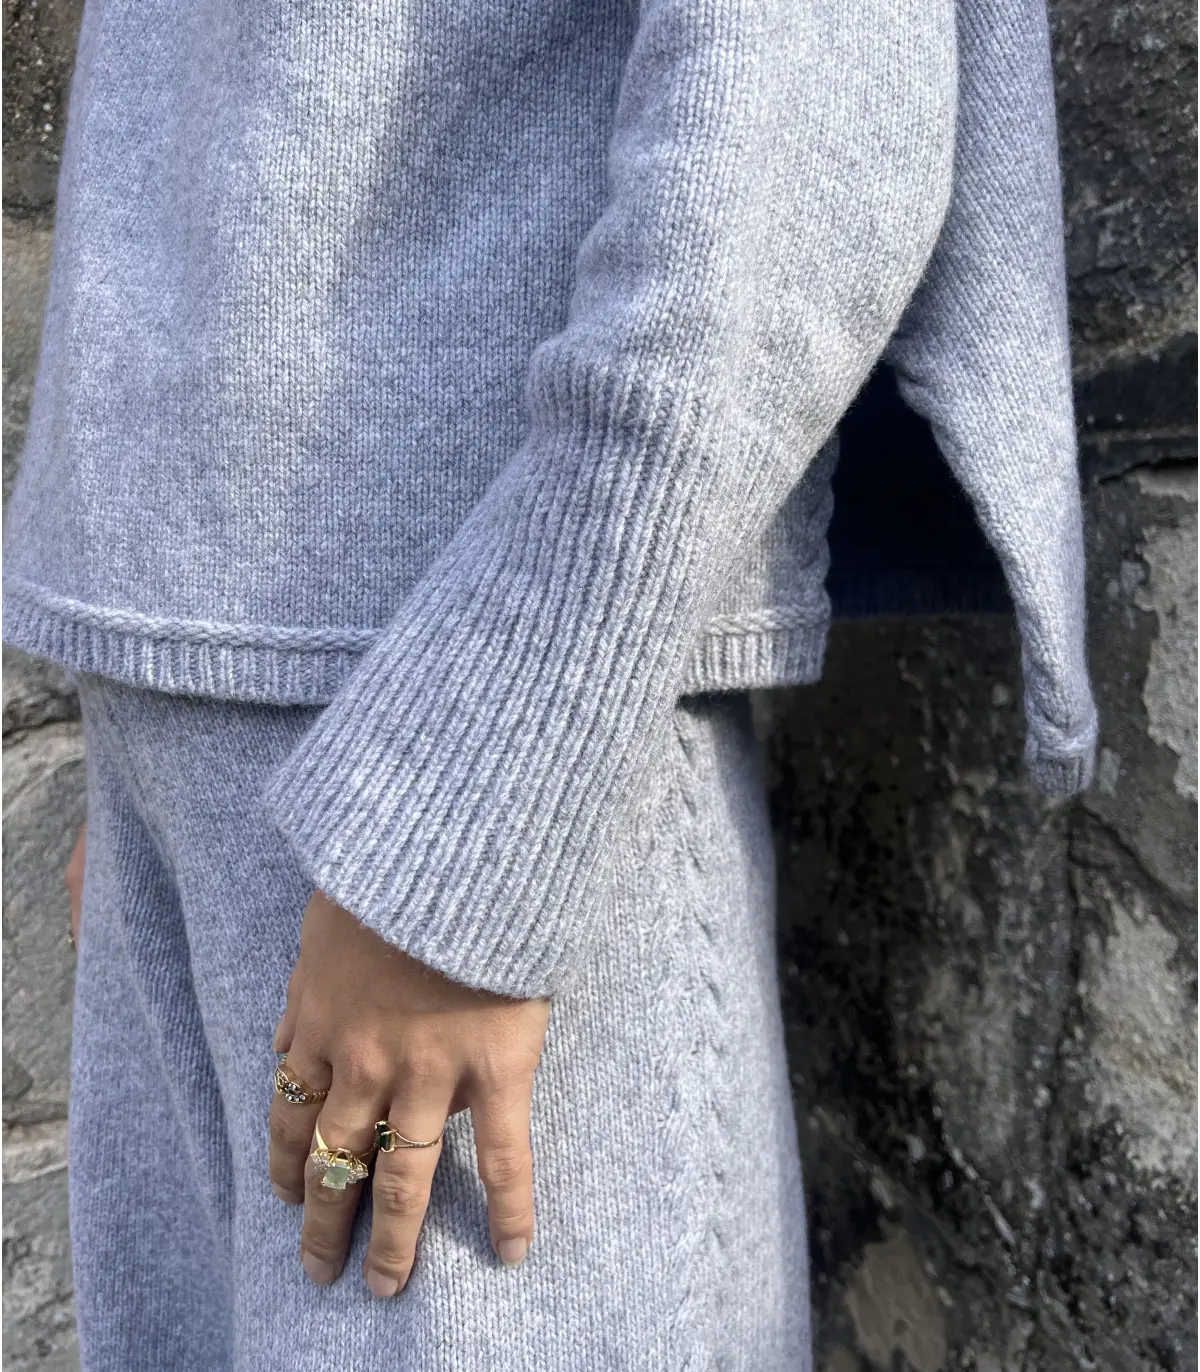 Pantalon de jogging avec poches en laine mérinos pour femme - Gris